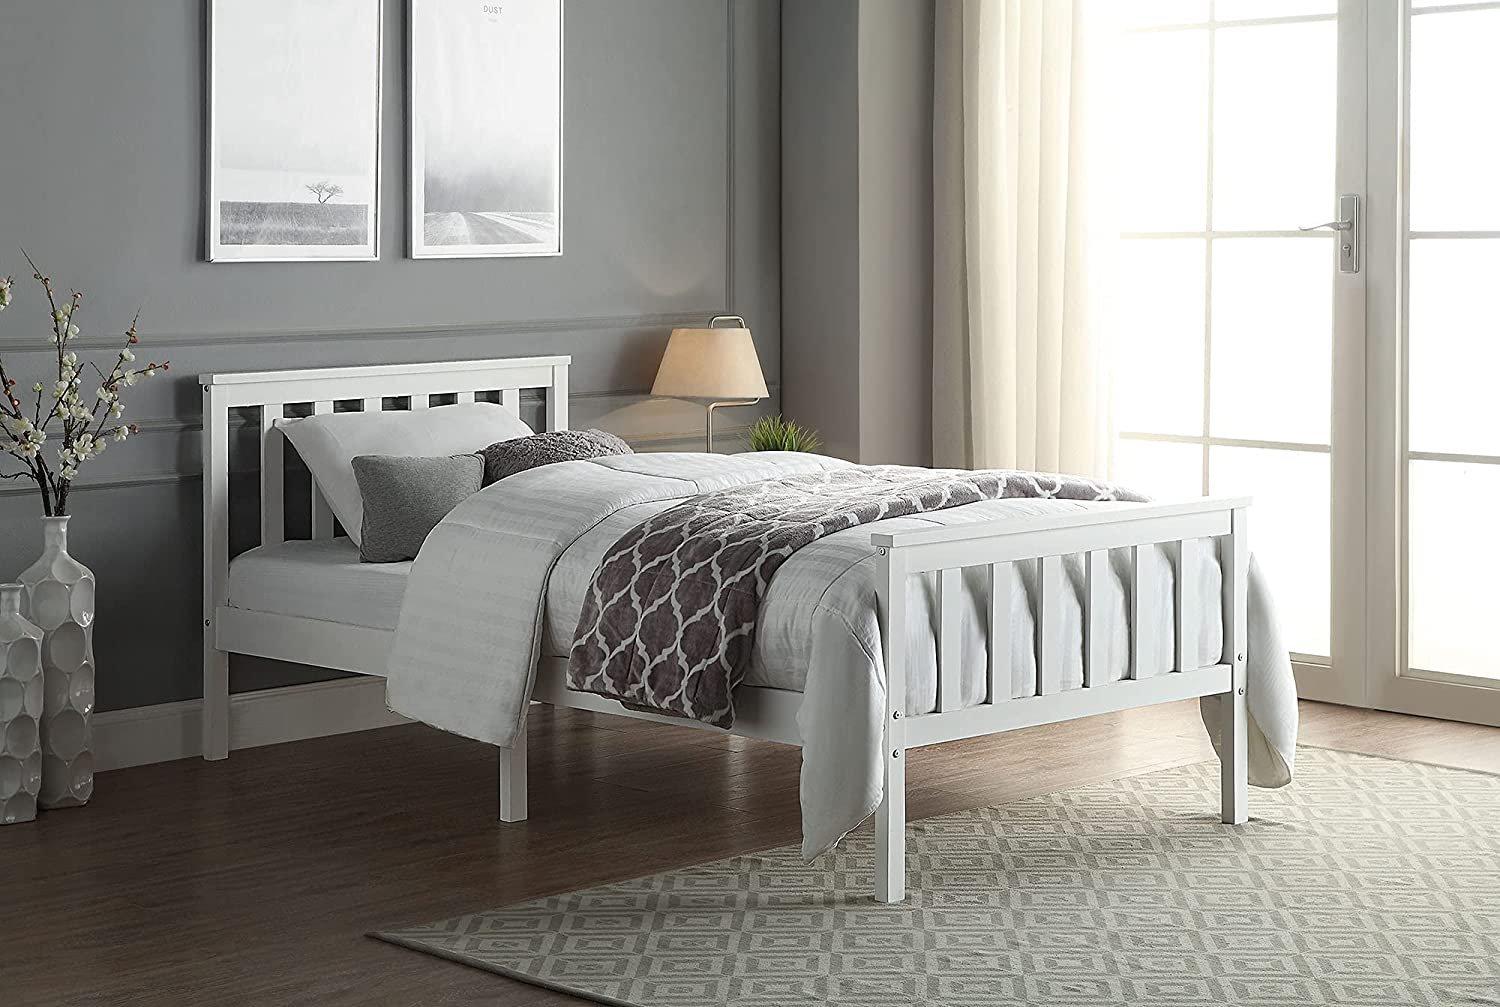 Solid Wooden Bed Frame